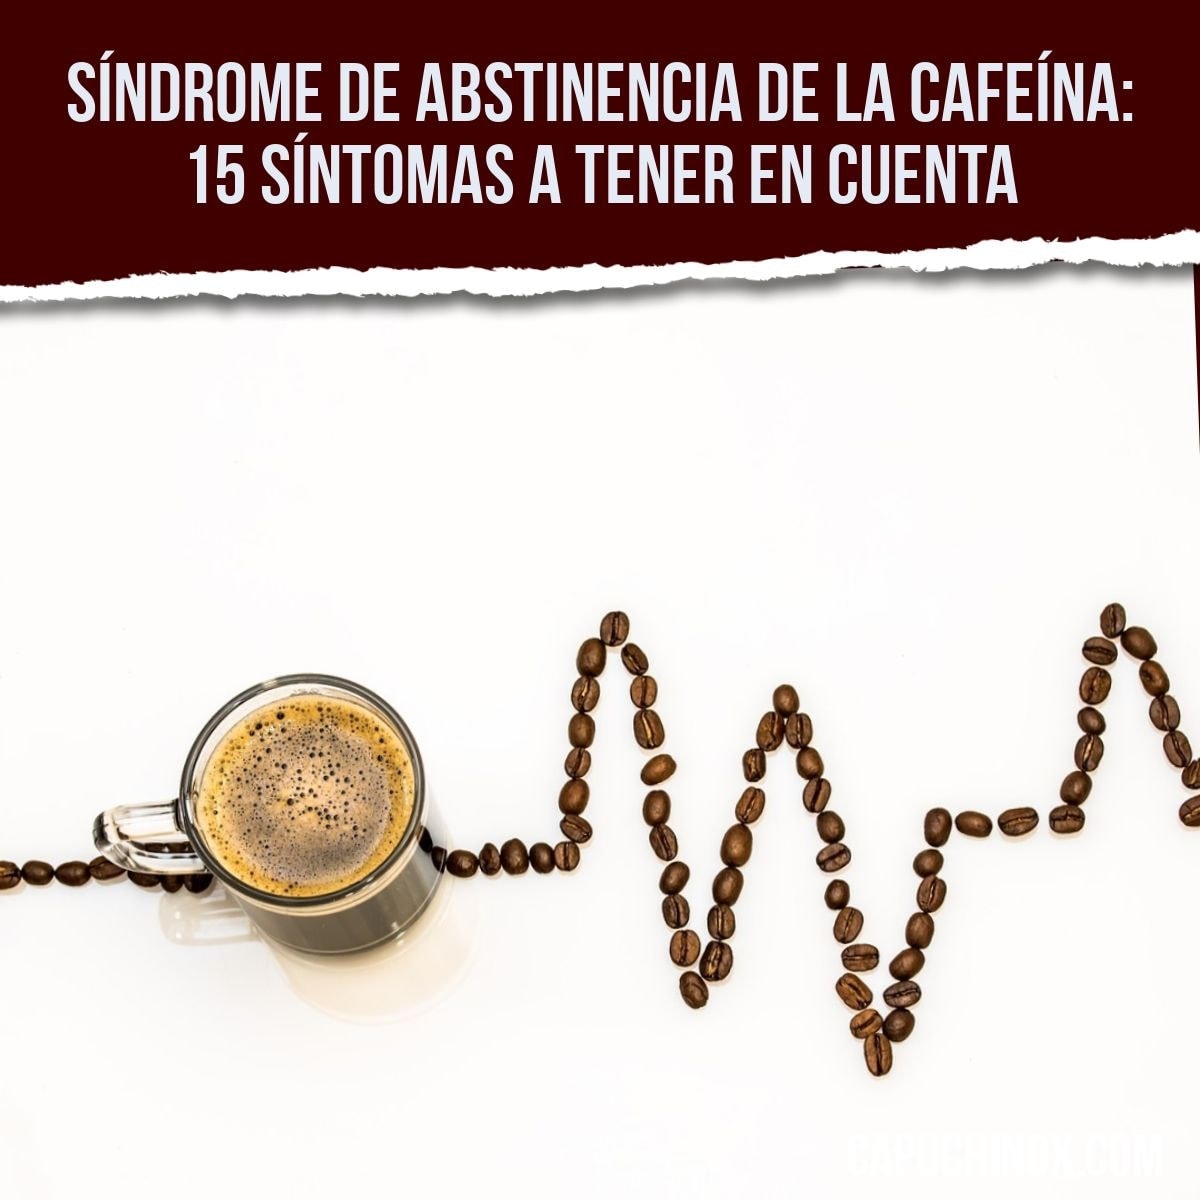 Síndrome de abstinencia de la cafeína: 15 síntomas a tener en cuenta